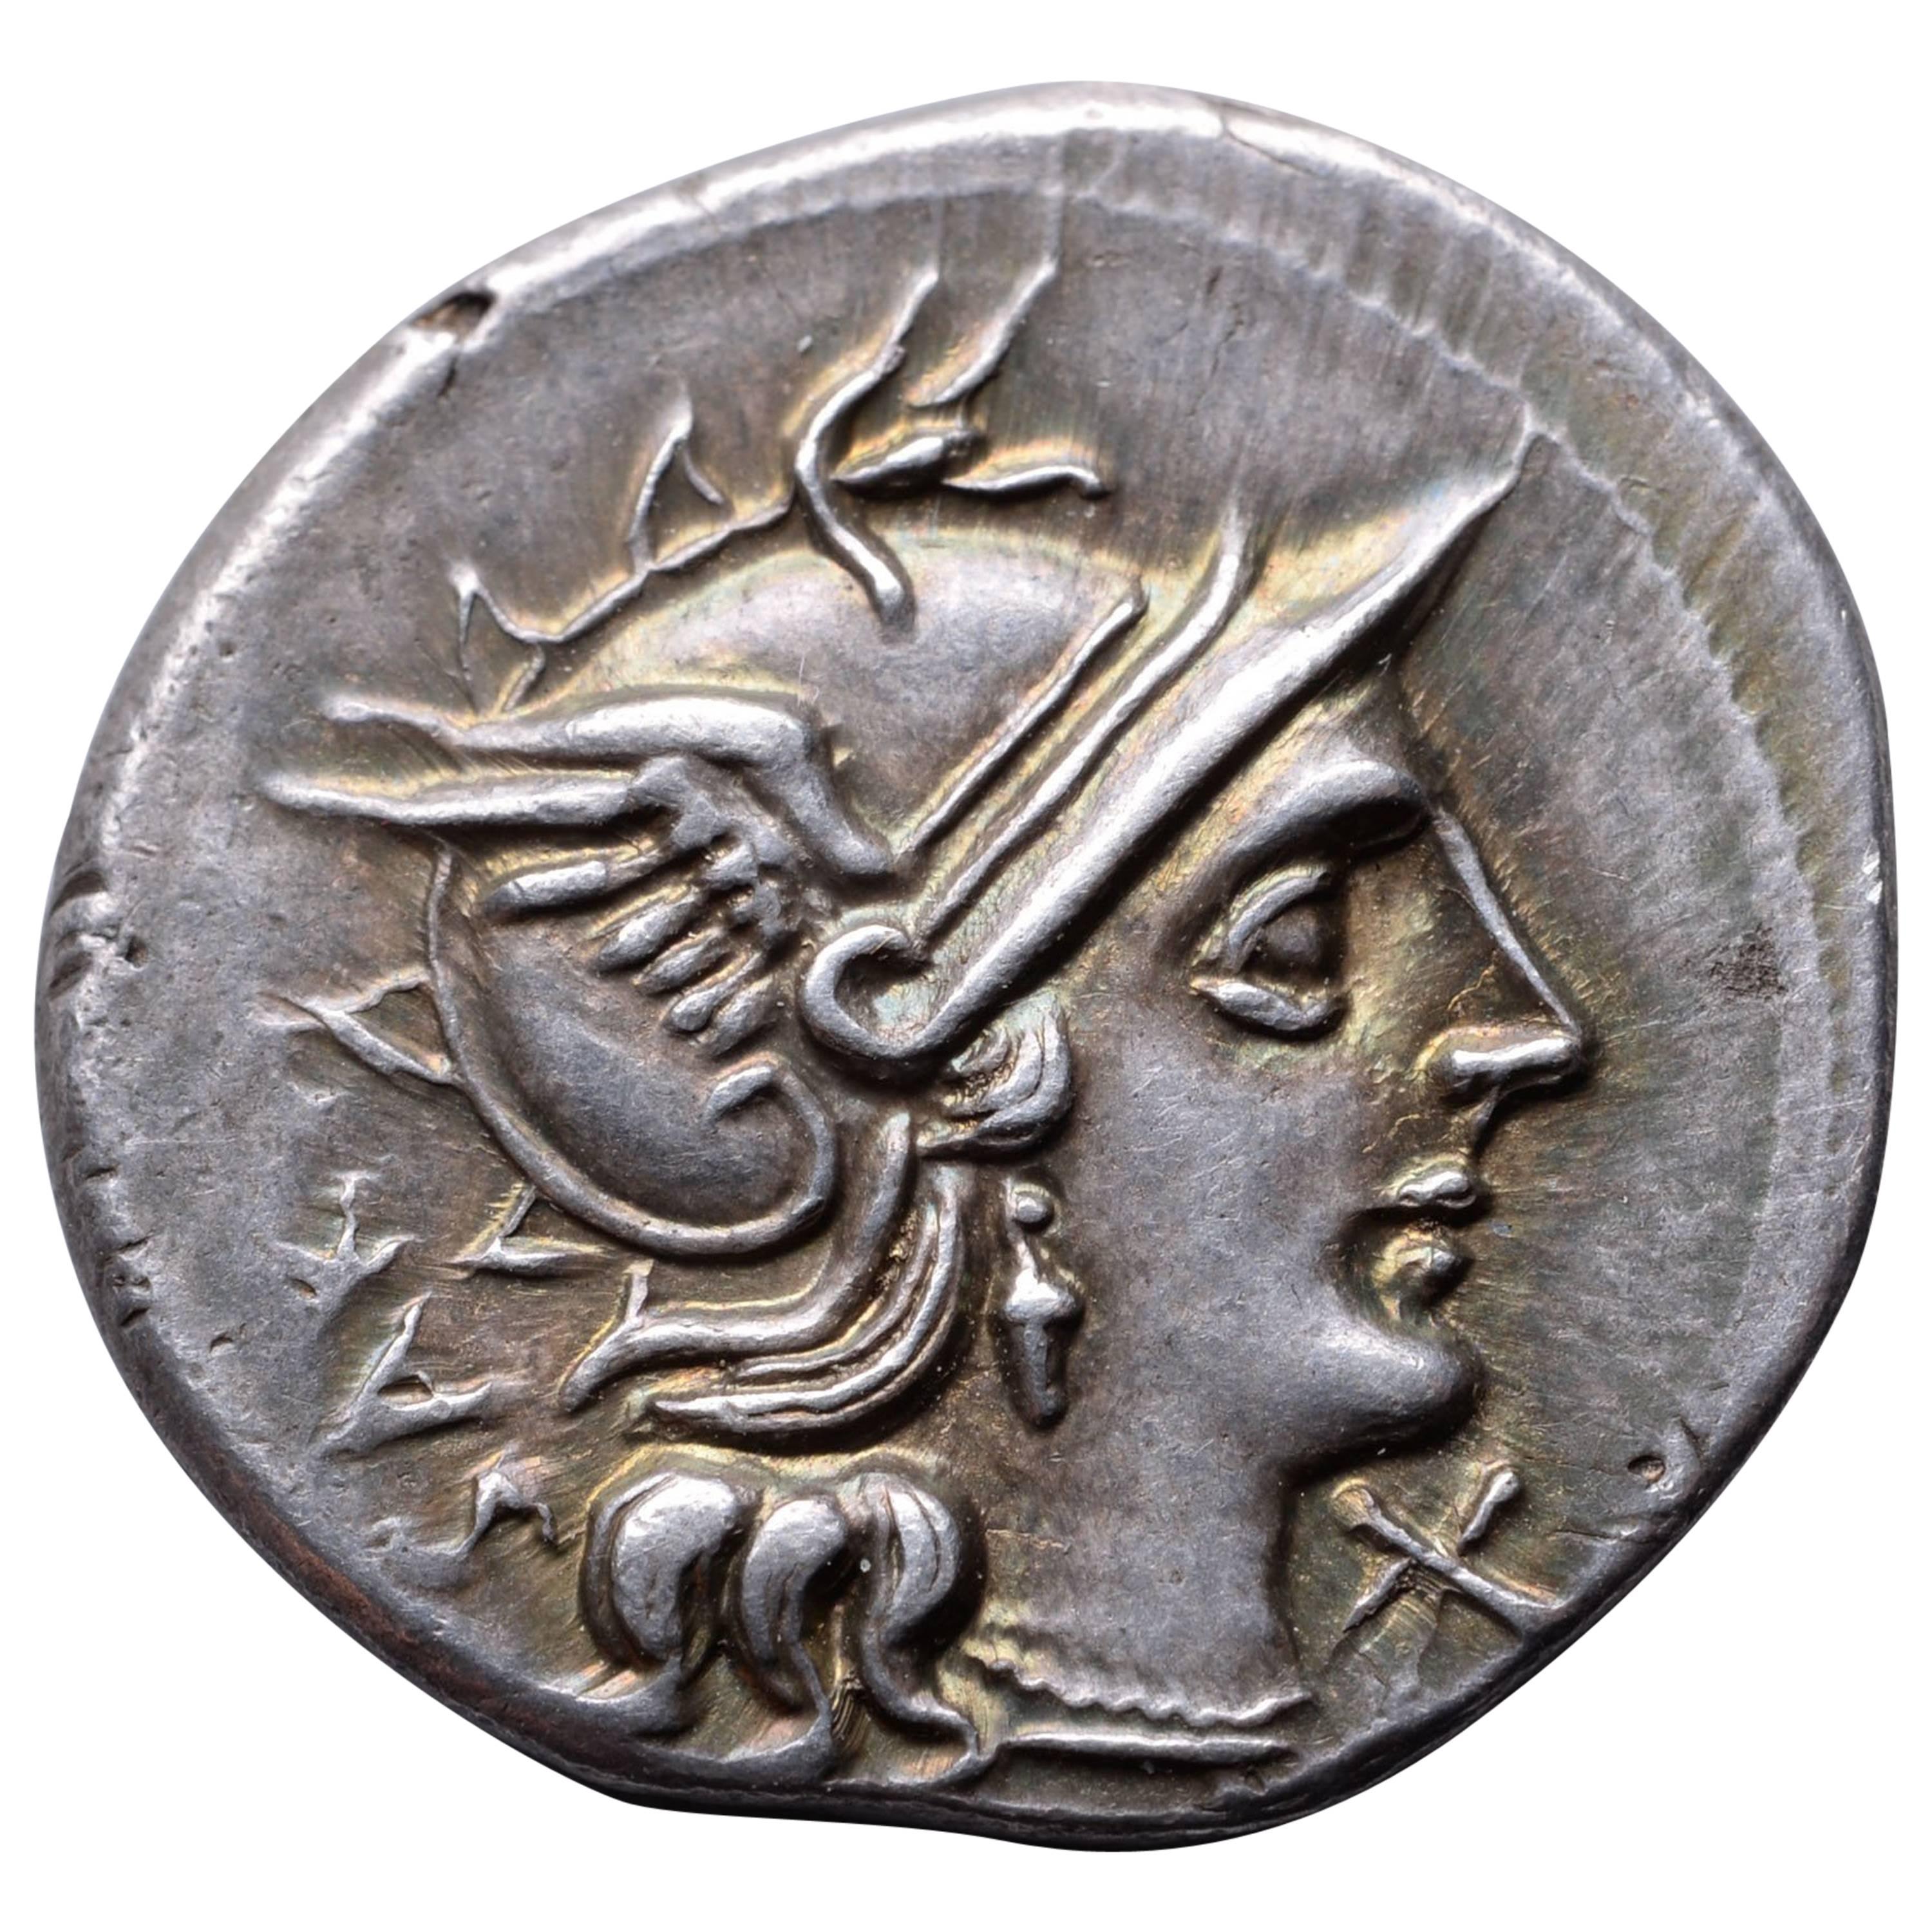 Roman Republican Denarius of Marcus Atilius Serranus, 148 BC